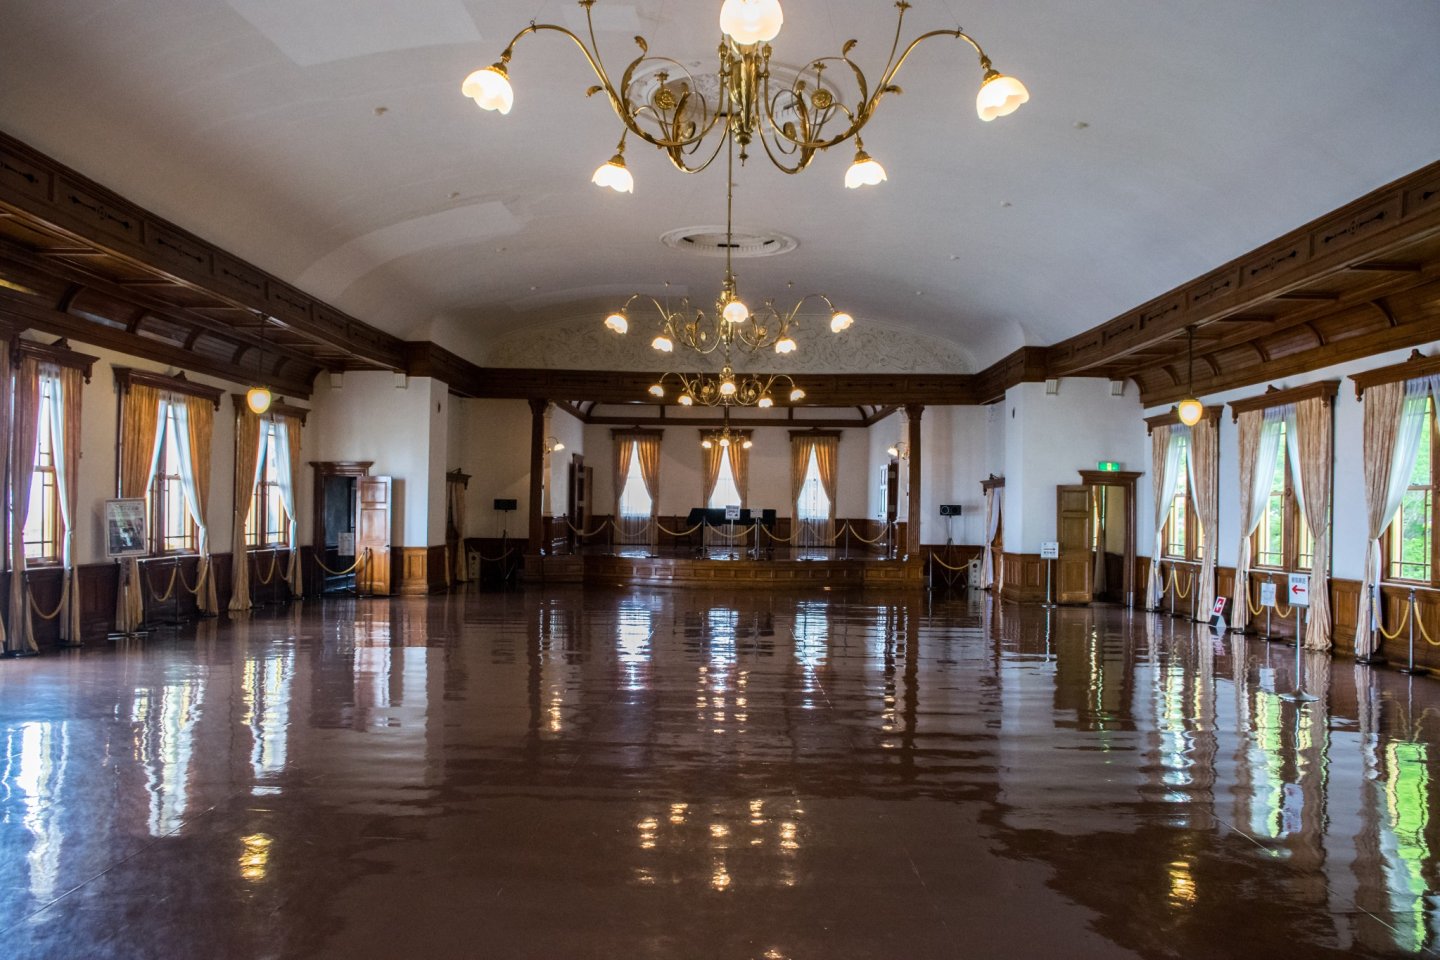 Aula konser adalah satu-satunya aula umum pada saat pembukaan rumah umum.